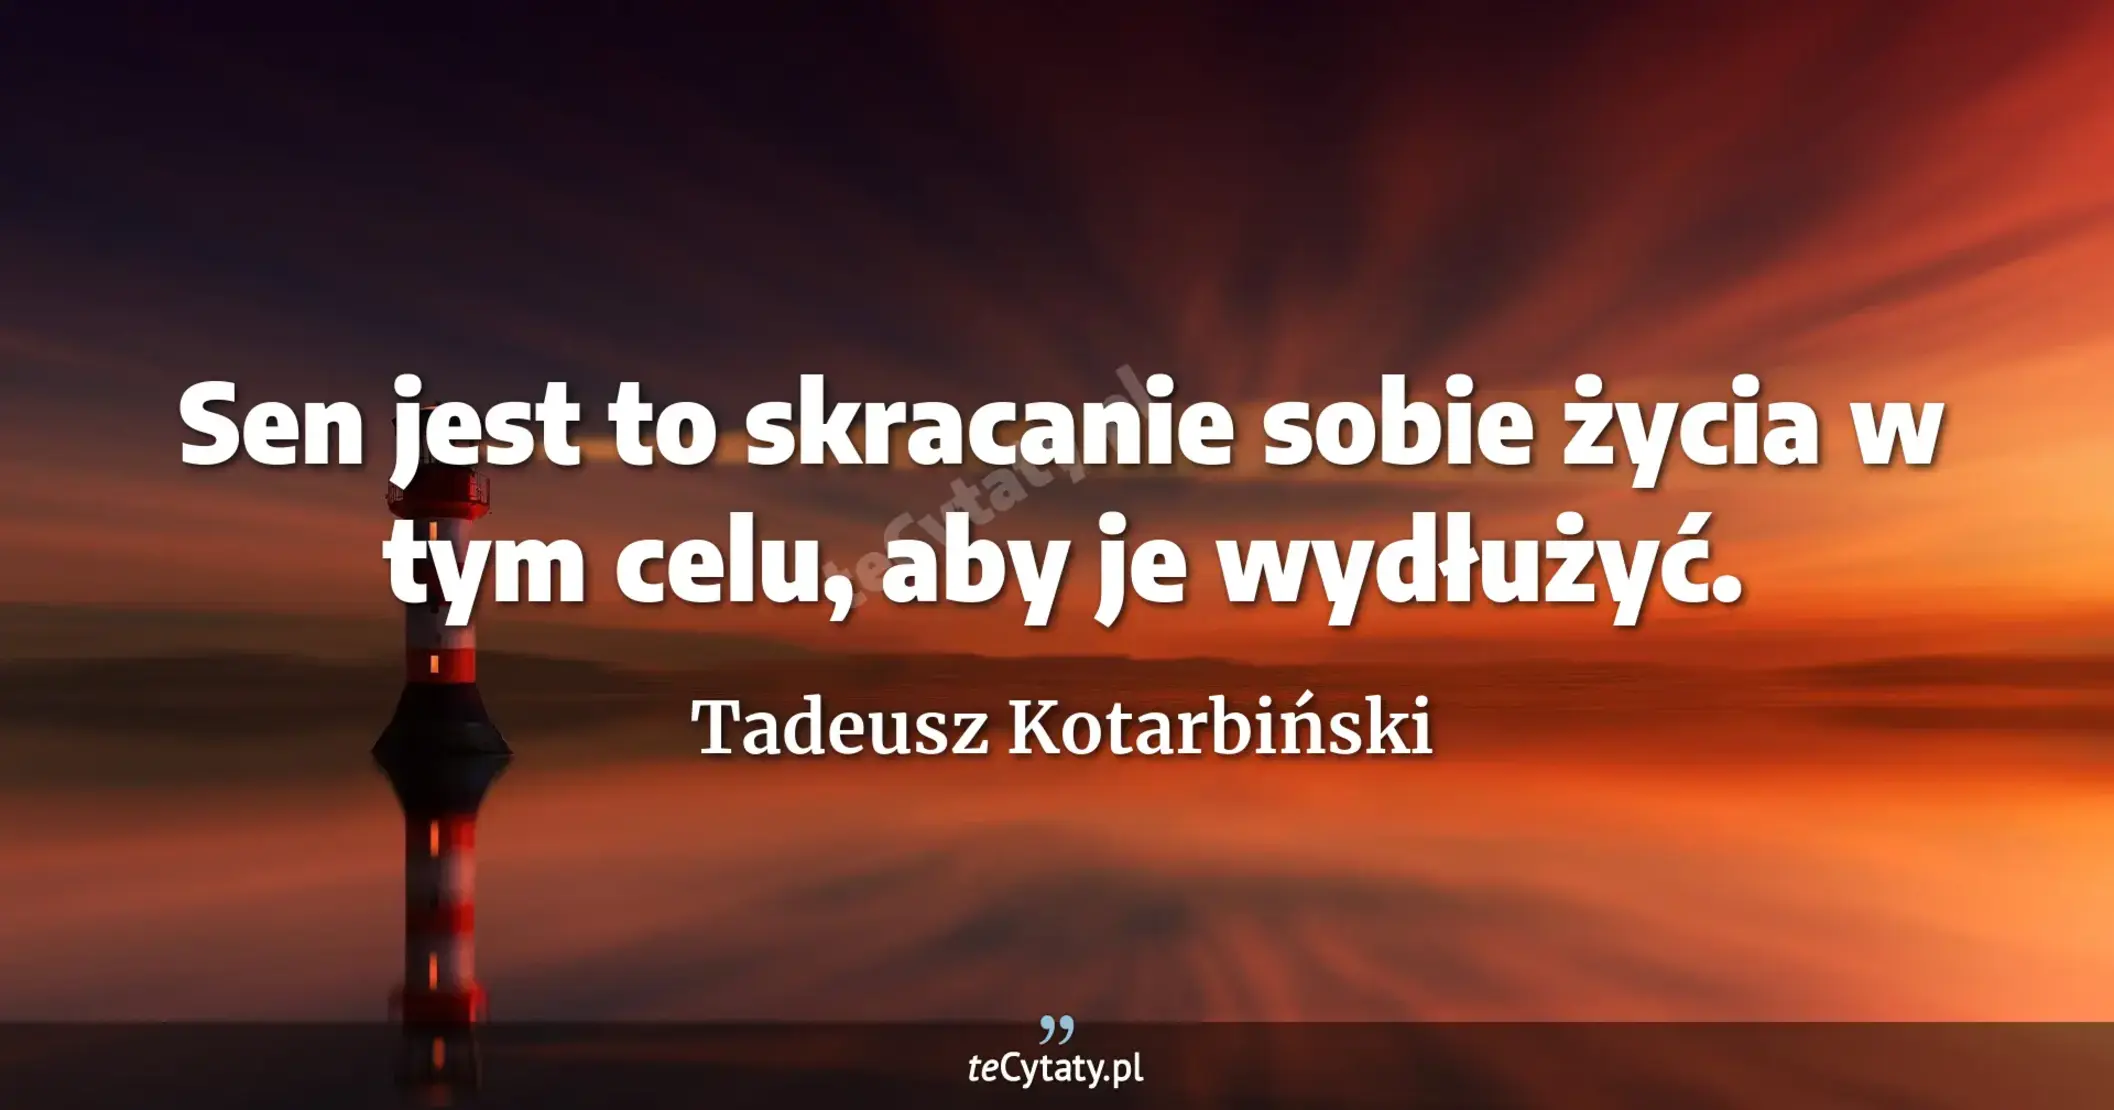 Sen jest to skracanie sobie życia w tym celu, aby je wydłużyć. - Tadeusz Kotarbiński